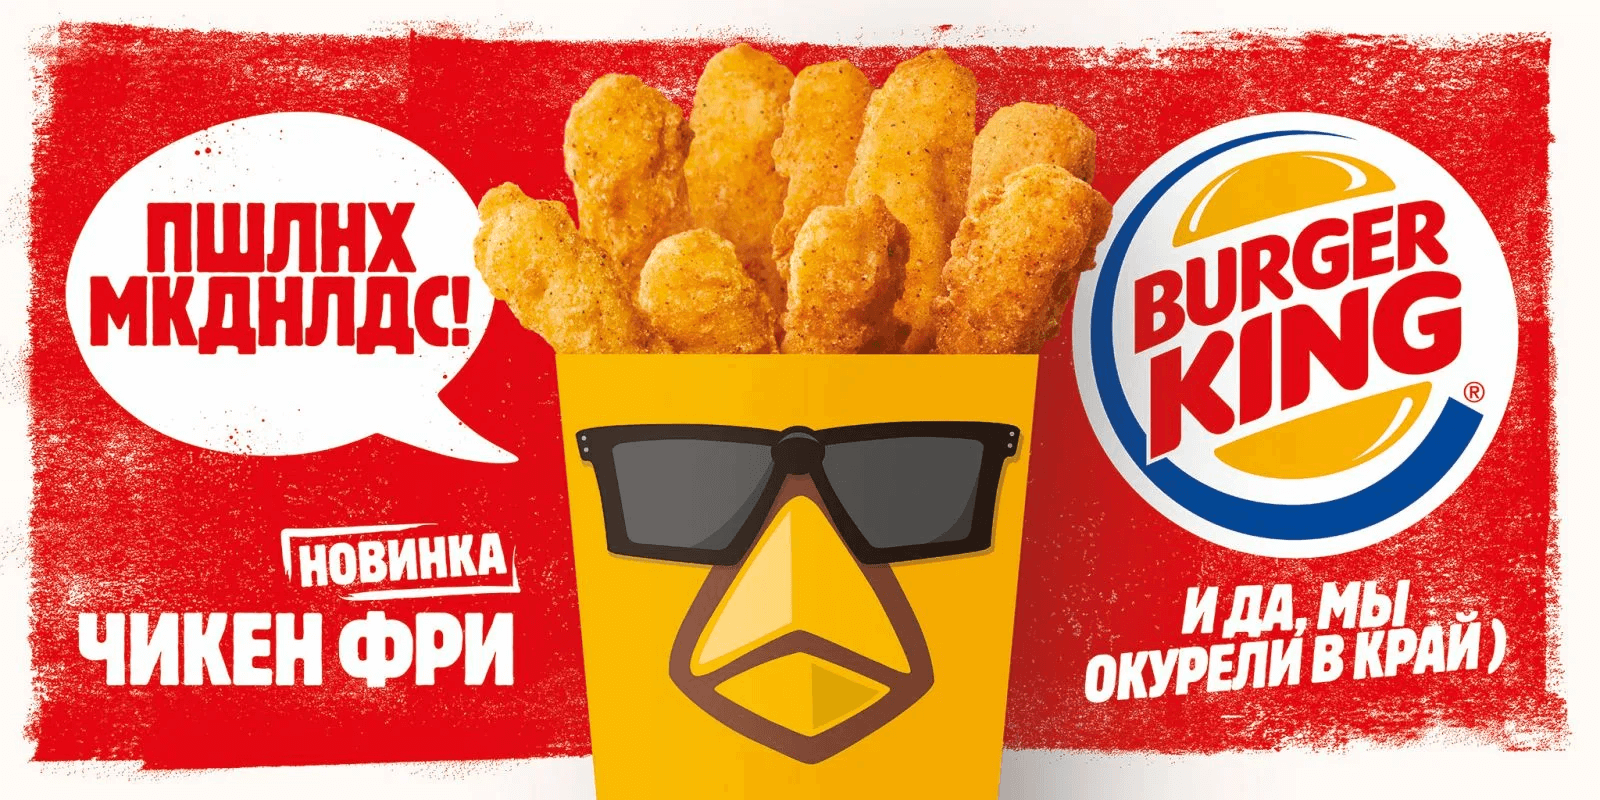 Креативная Реклама фастфуда Burger King